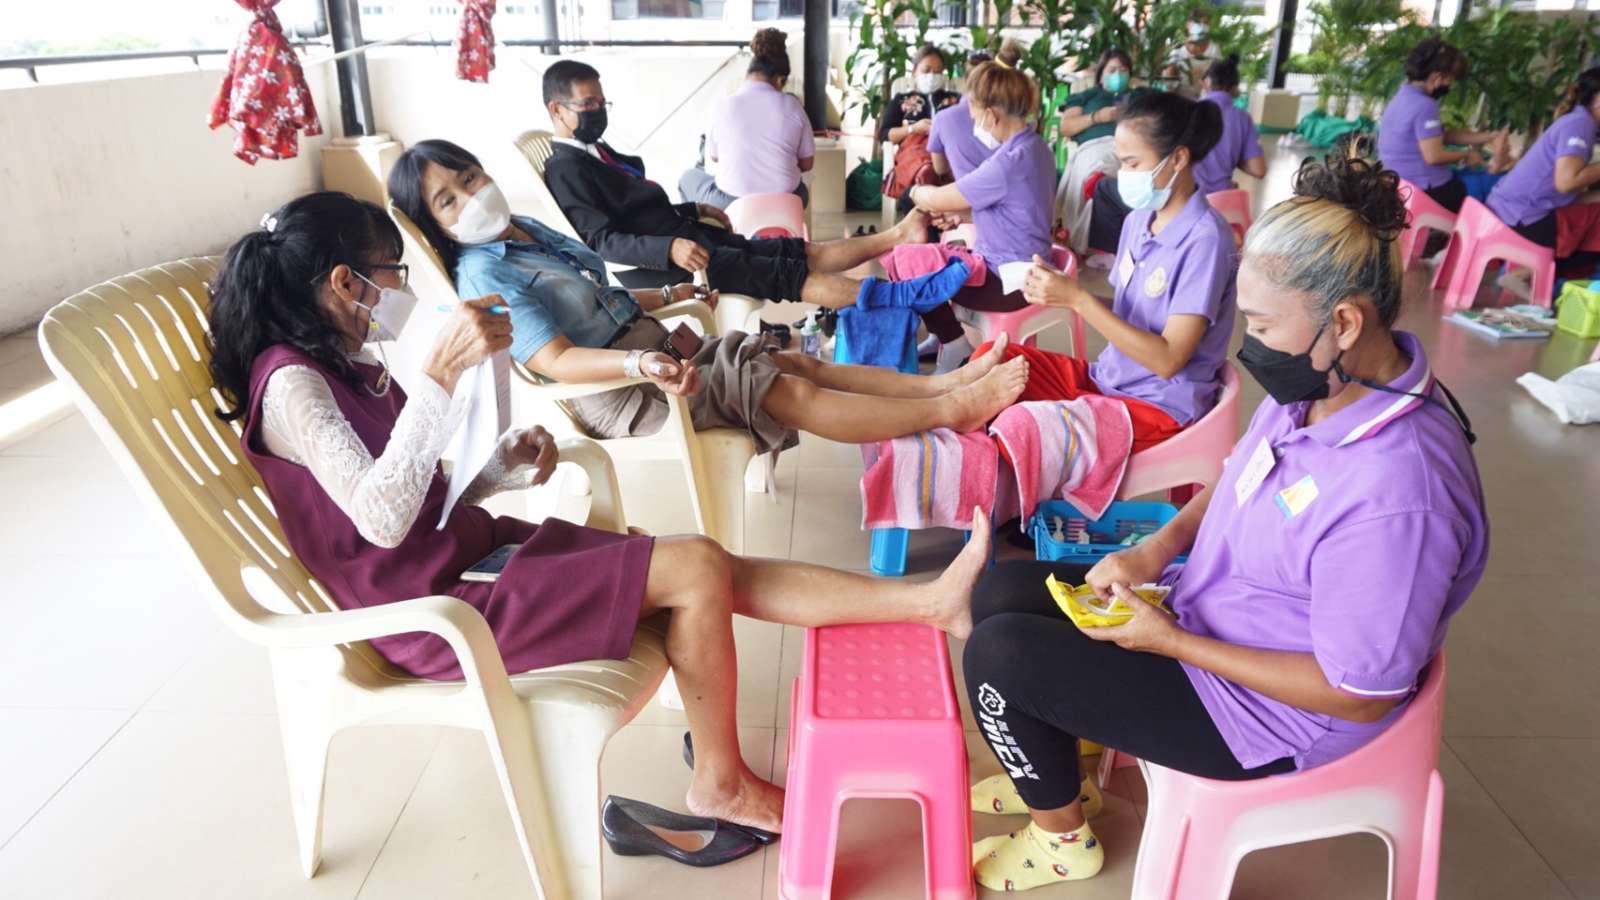 В Паттайе предлагают бесплатный тайский массаж всем желающим